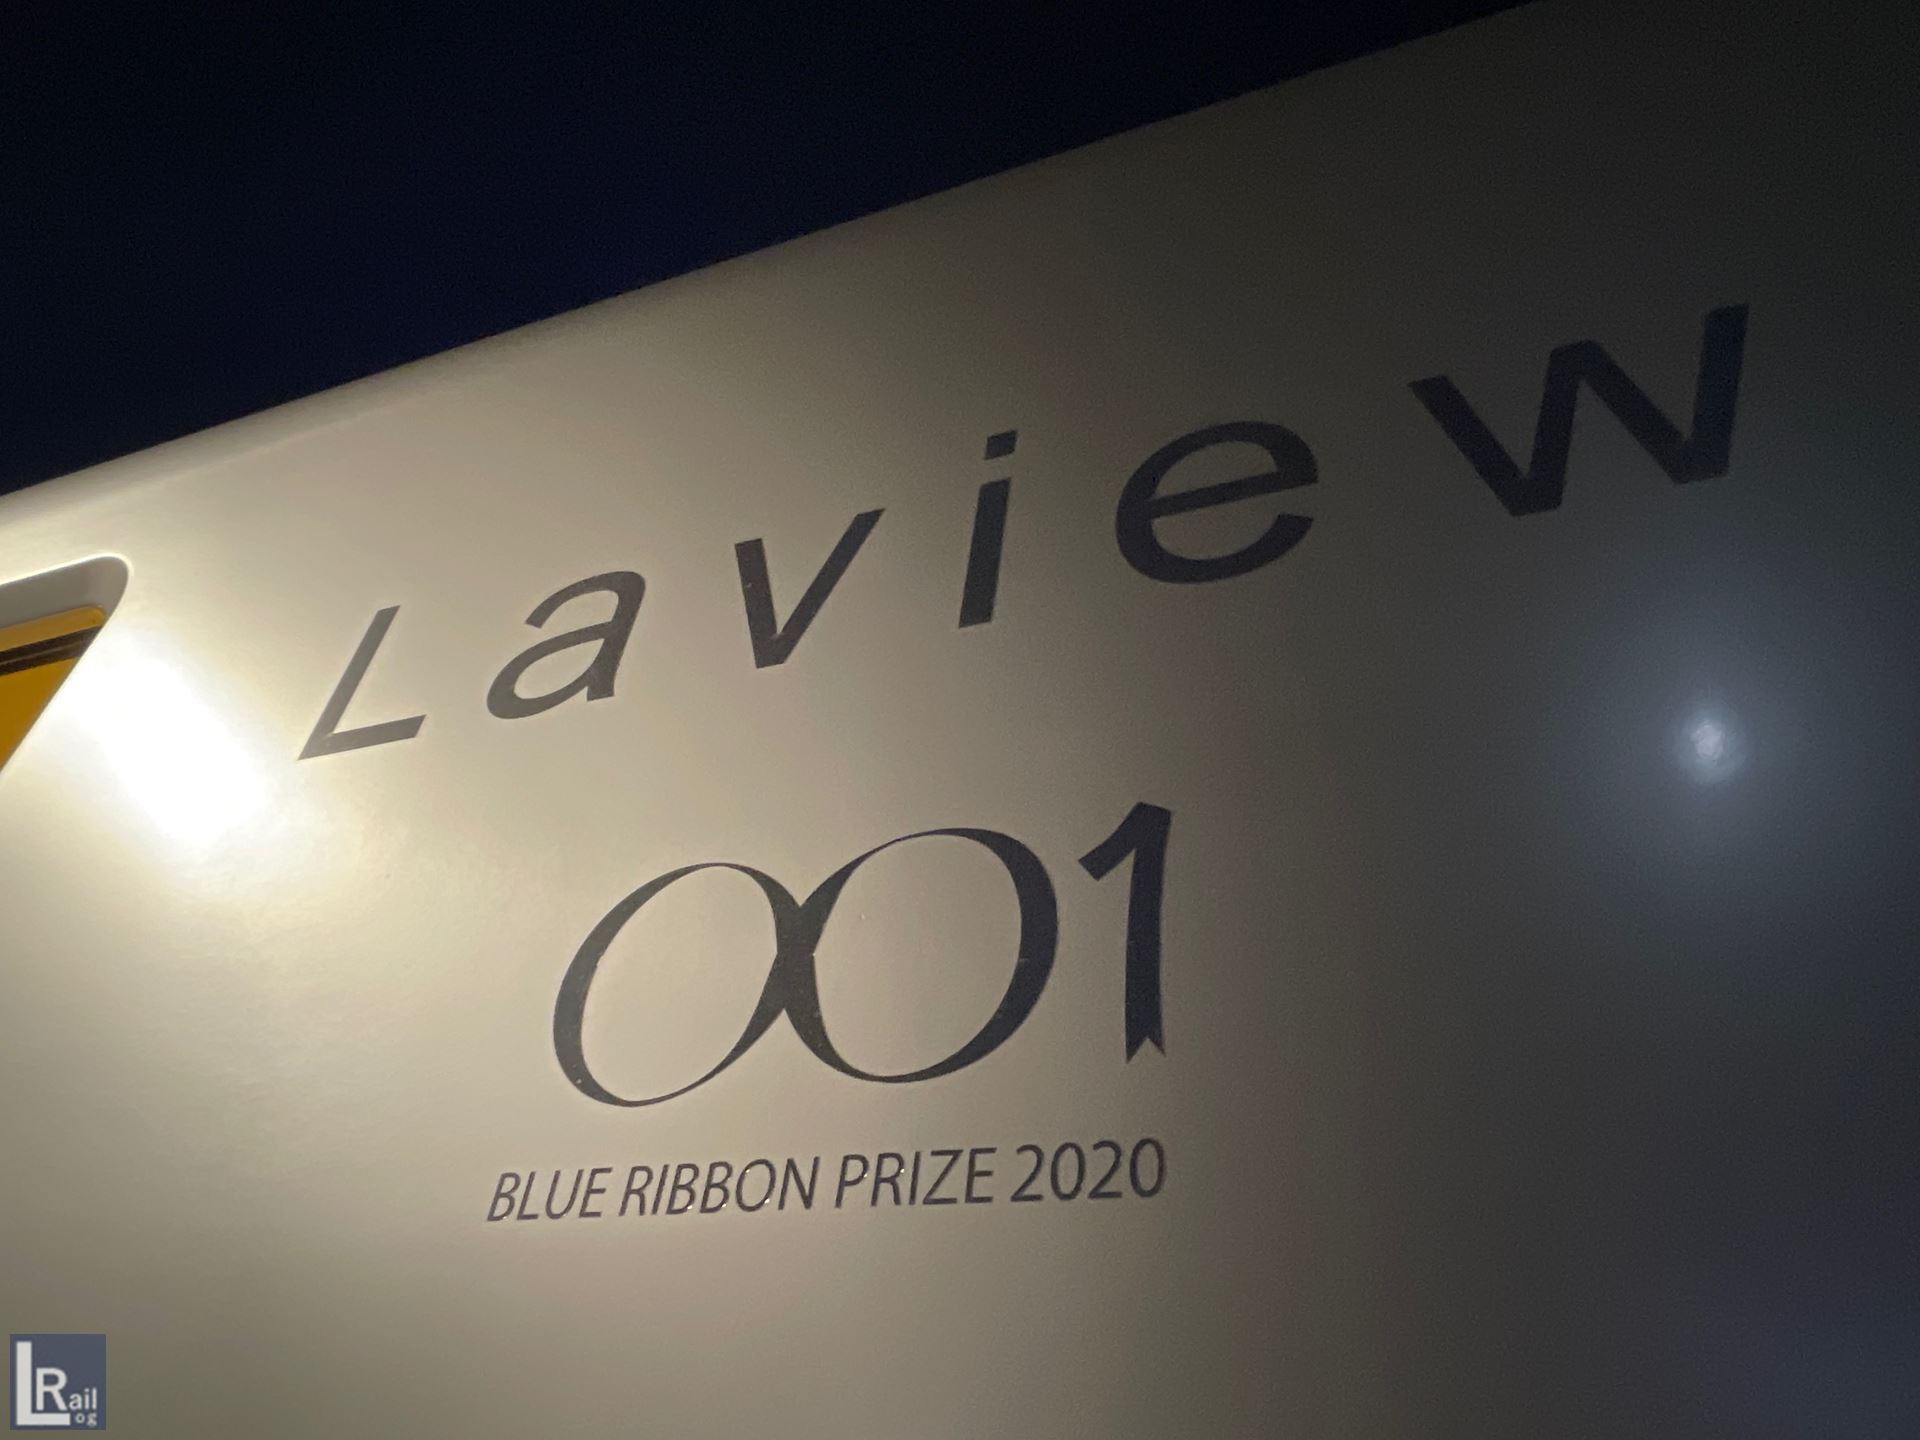 ラビューは2020年にブルーリボン賞を受賞しています。これを記念した装飾が車外と車内に見られます。